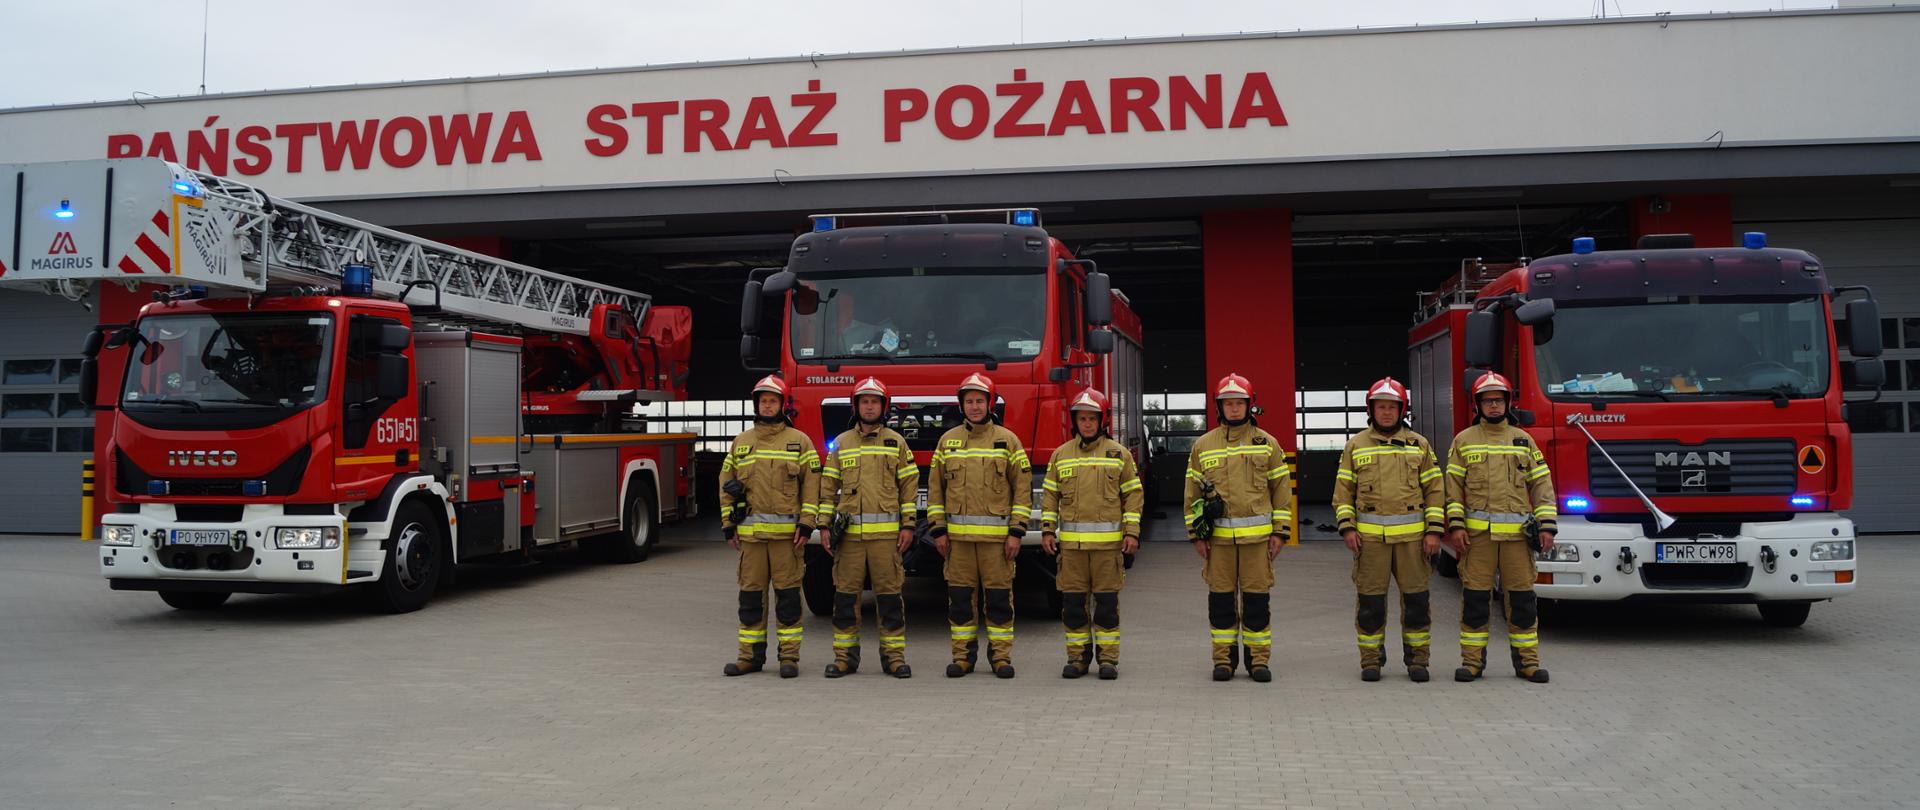 Zdjęcie przedstawia siedmiu strażaków stojących przed pojazdami pożarniczymi